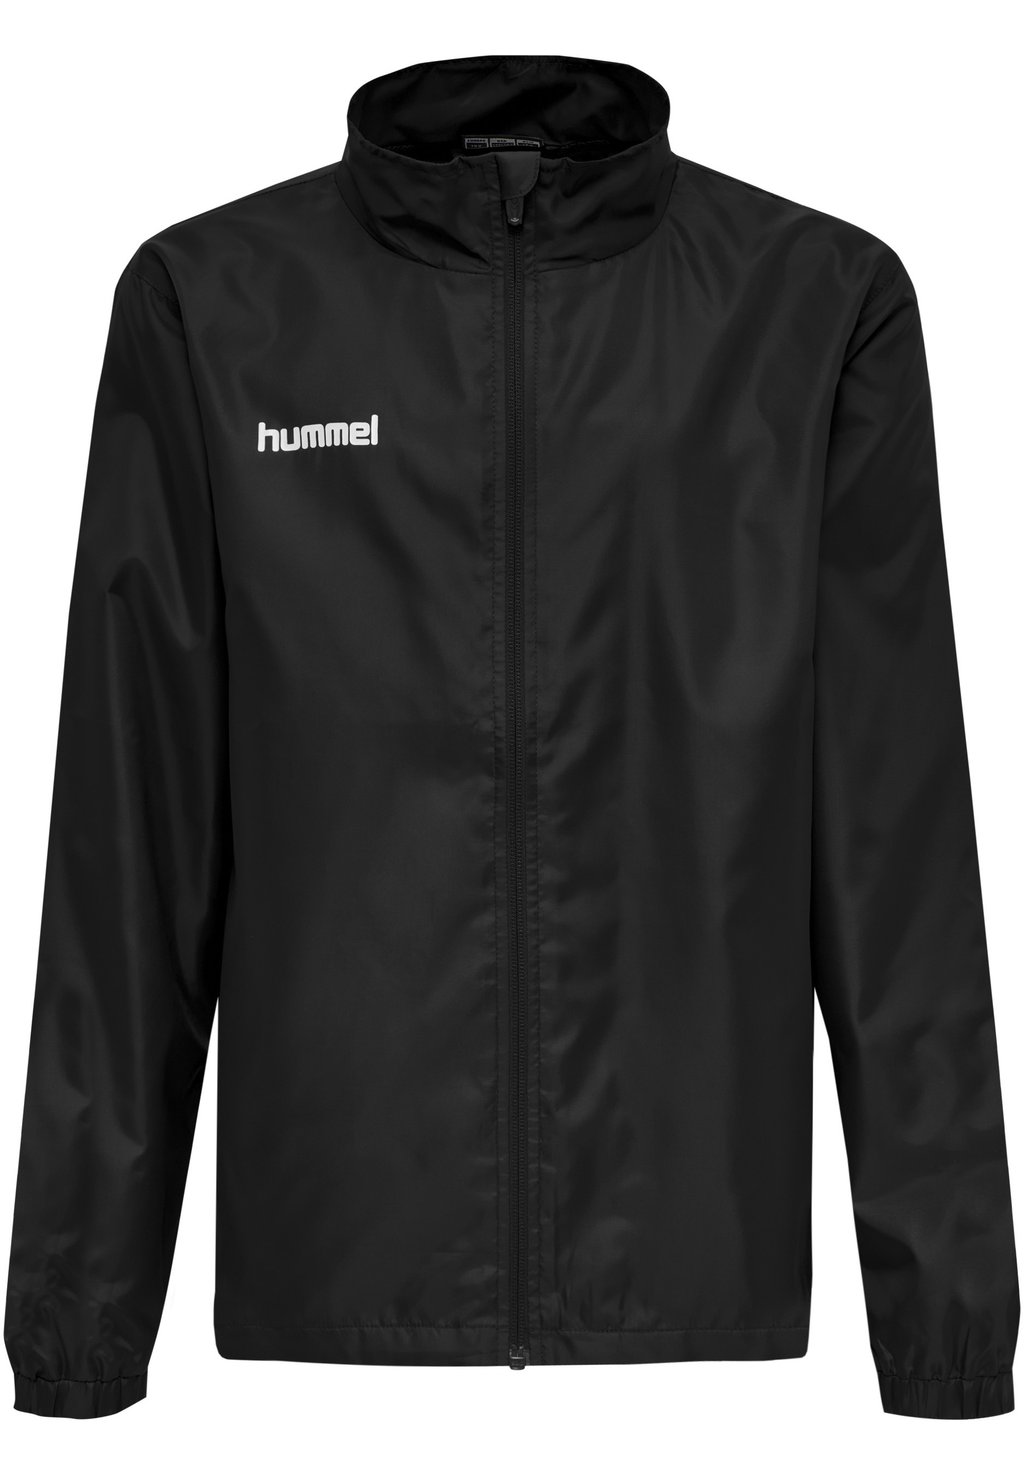 Куртка для бега Hummel, черная куртка для бега h